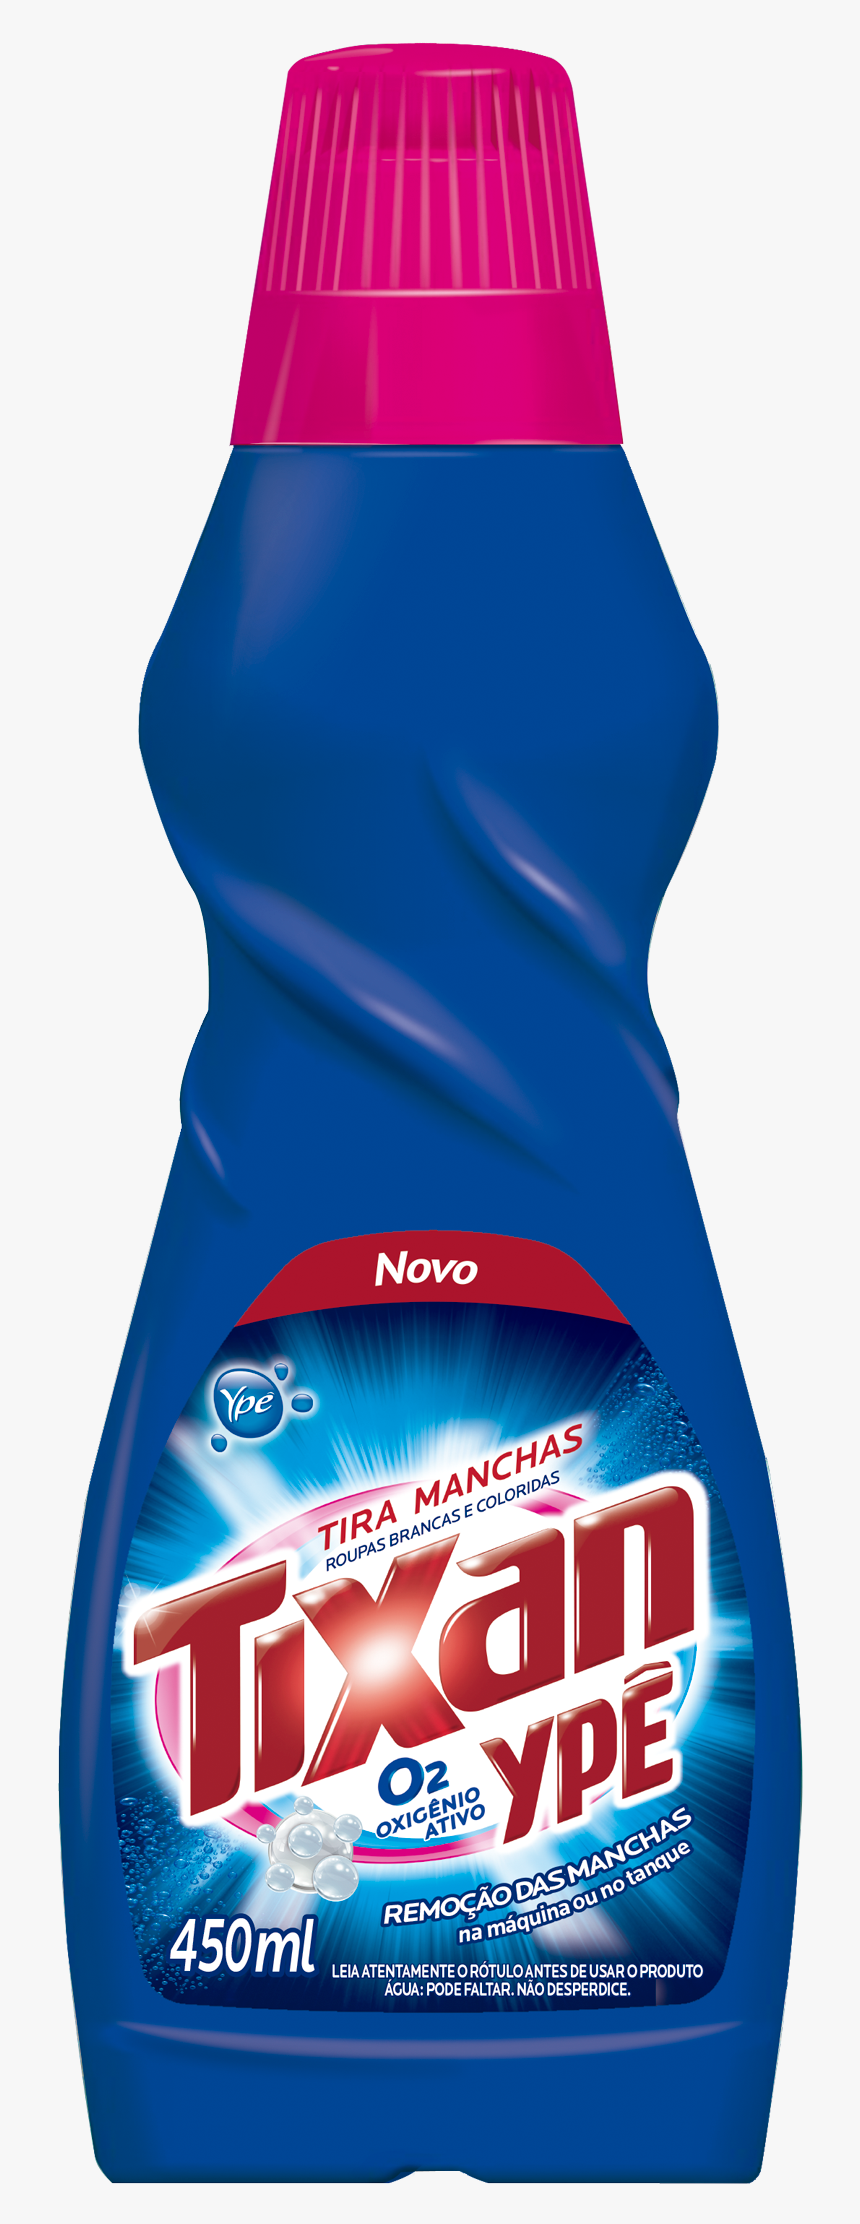 Tira Manchas Tixan Ype, HD Png Download, Free Download